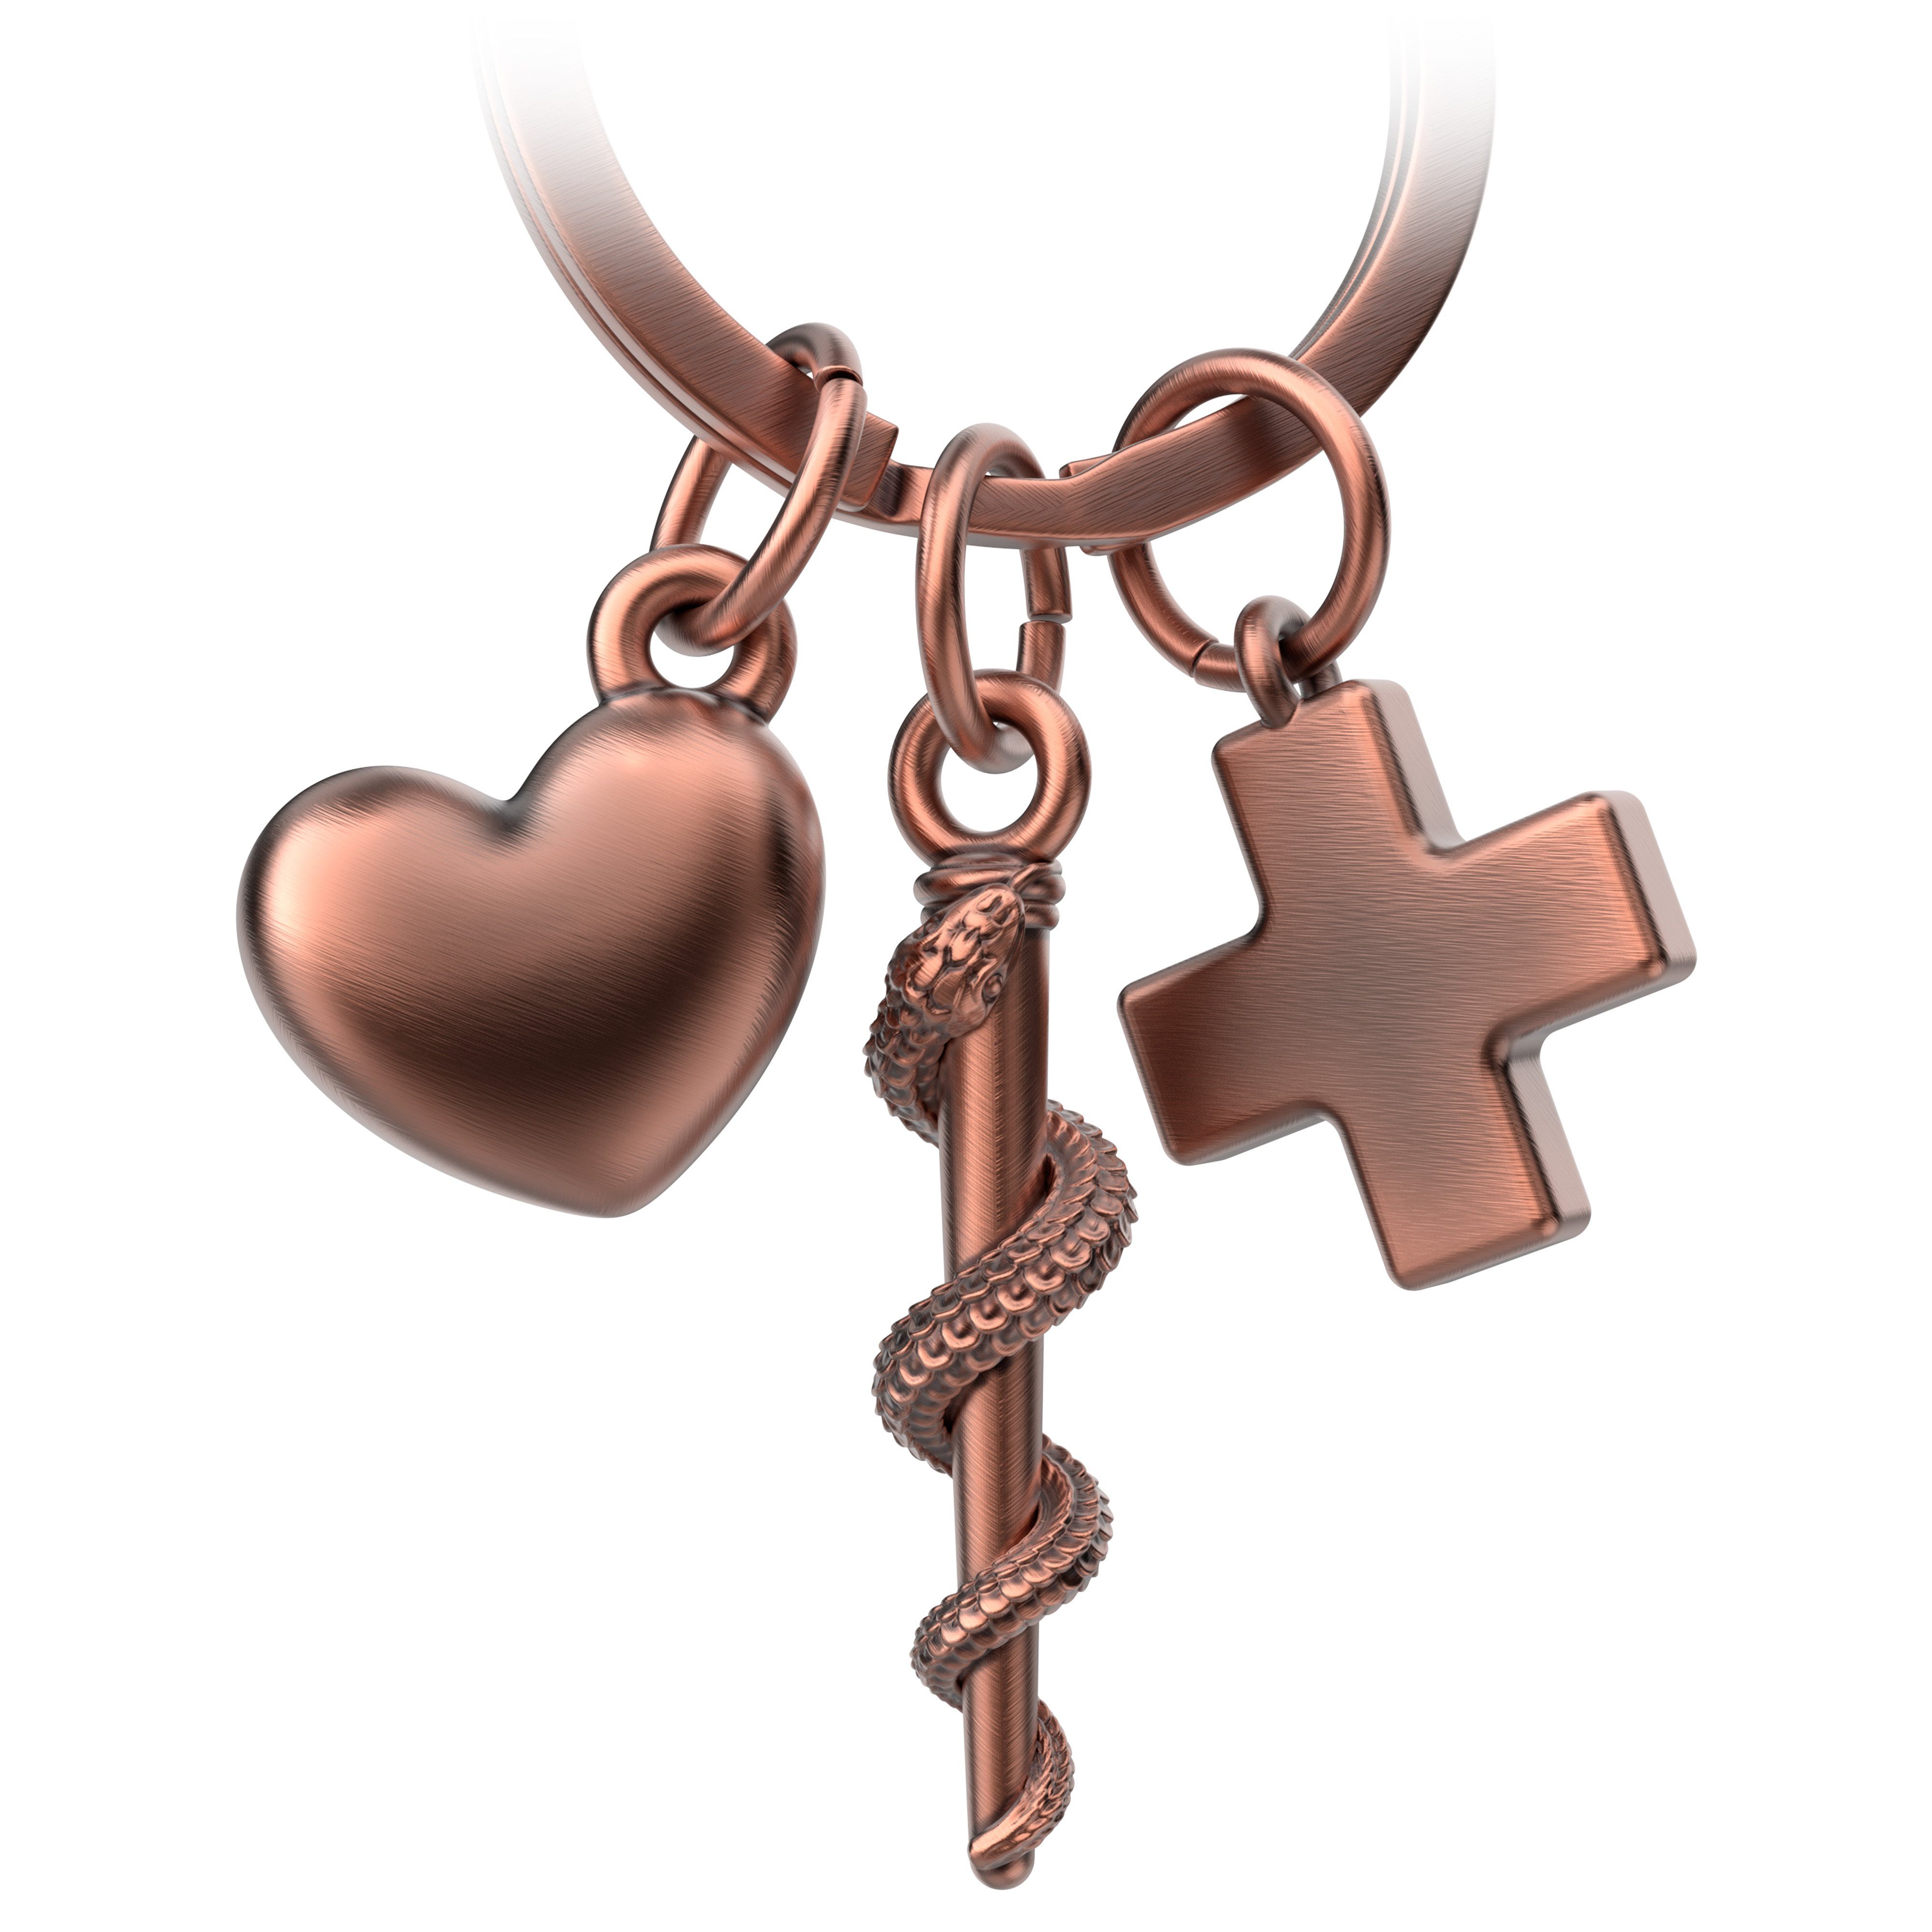 Asklepios FABACH Äskulapstab Schlüsselanhänger mit Herz Antique Kreuz Schlüsselanhänger und Roségold